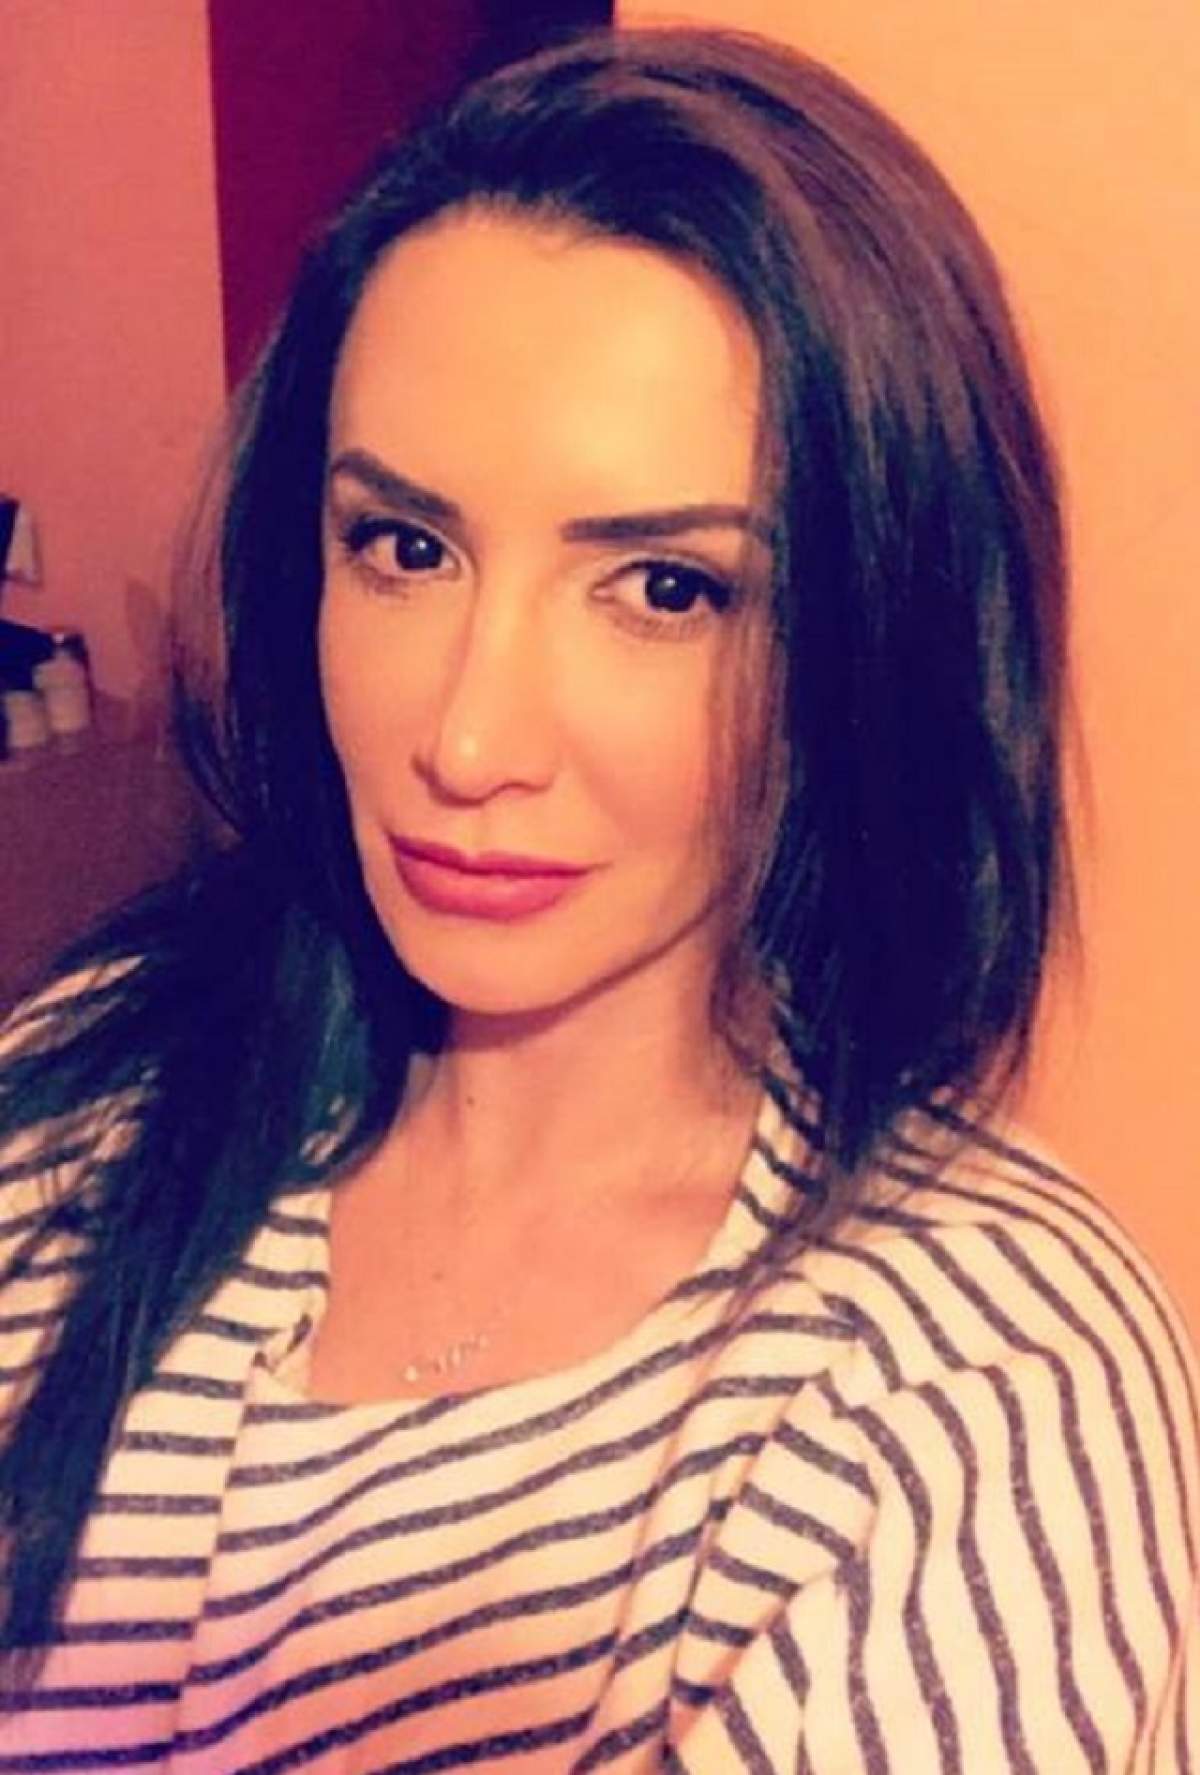 Mara Bănică a făcut accident rutier: "Mă izbesc din impact cu pieptul de volan"